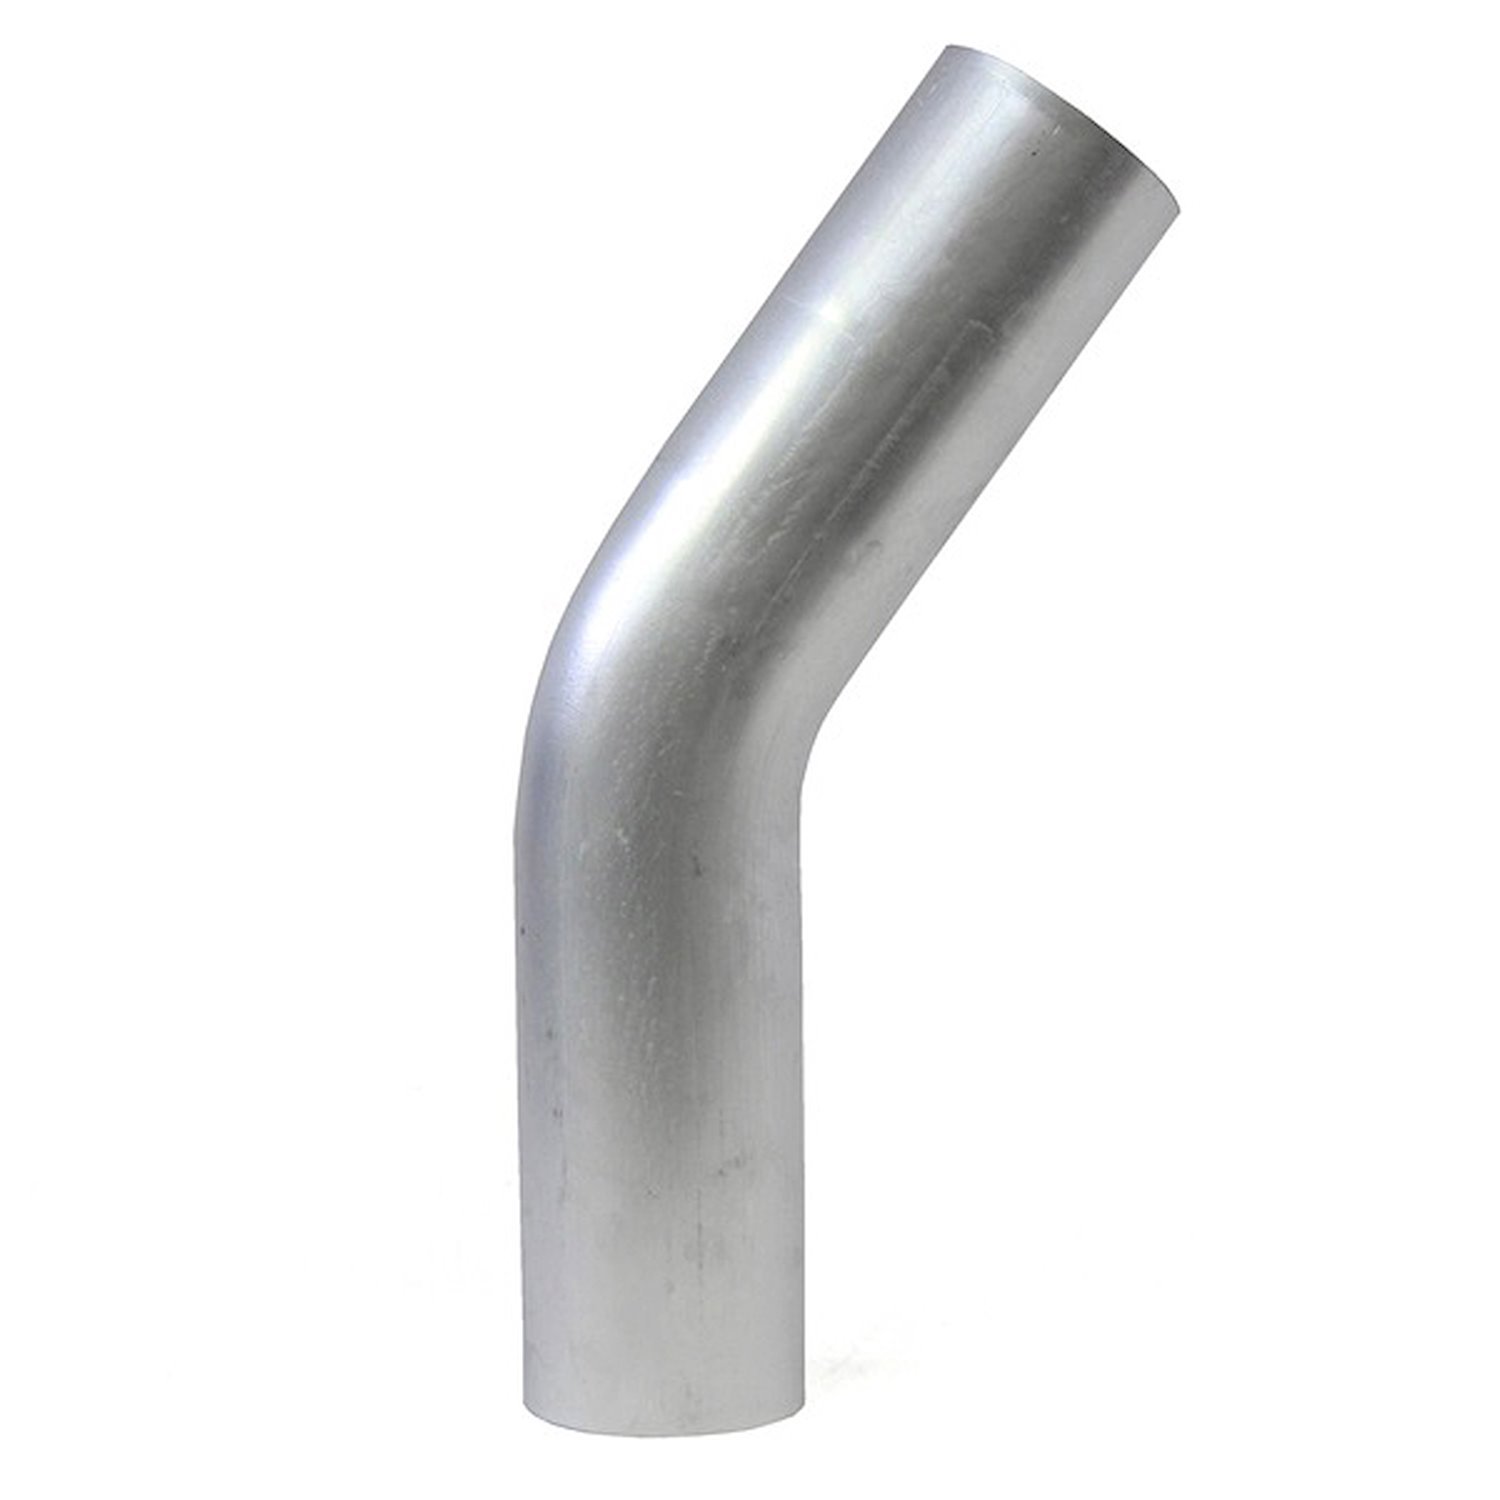 AT35-400-CLR-55 Aluminum Elbow Tube, 6061 Aluminum, 35-Degree Bend Elbow Tubing, 4 in. OD, Large Radius, 5-1/2 in. CLR